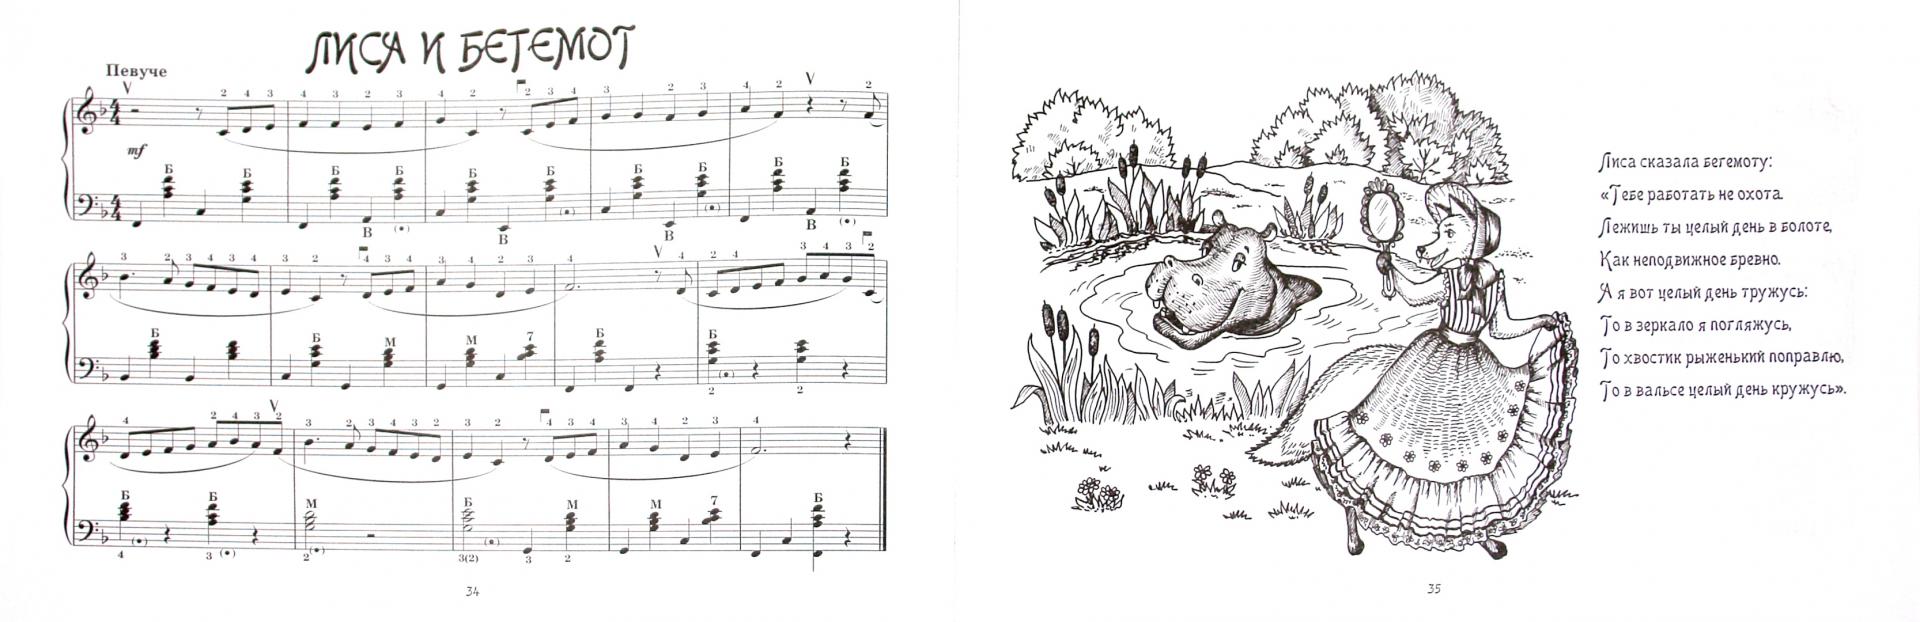 Иллюстрация 1 из 8 для Музыкальный зоопарк: для маленьких и самых маленьких баянистов и аккордеонистов - Левина, Левин | Лабиринт - книги. Источник: Лабиринт